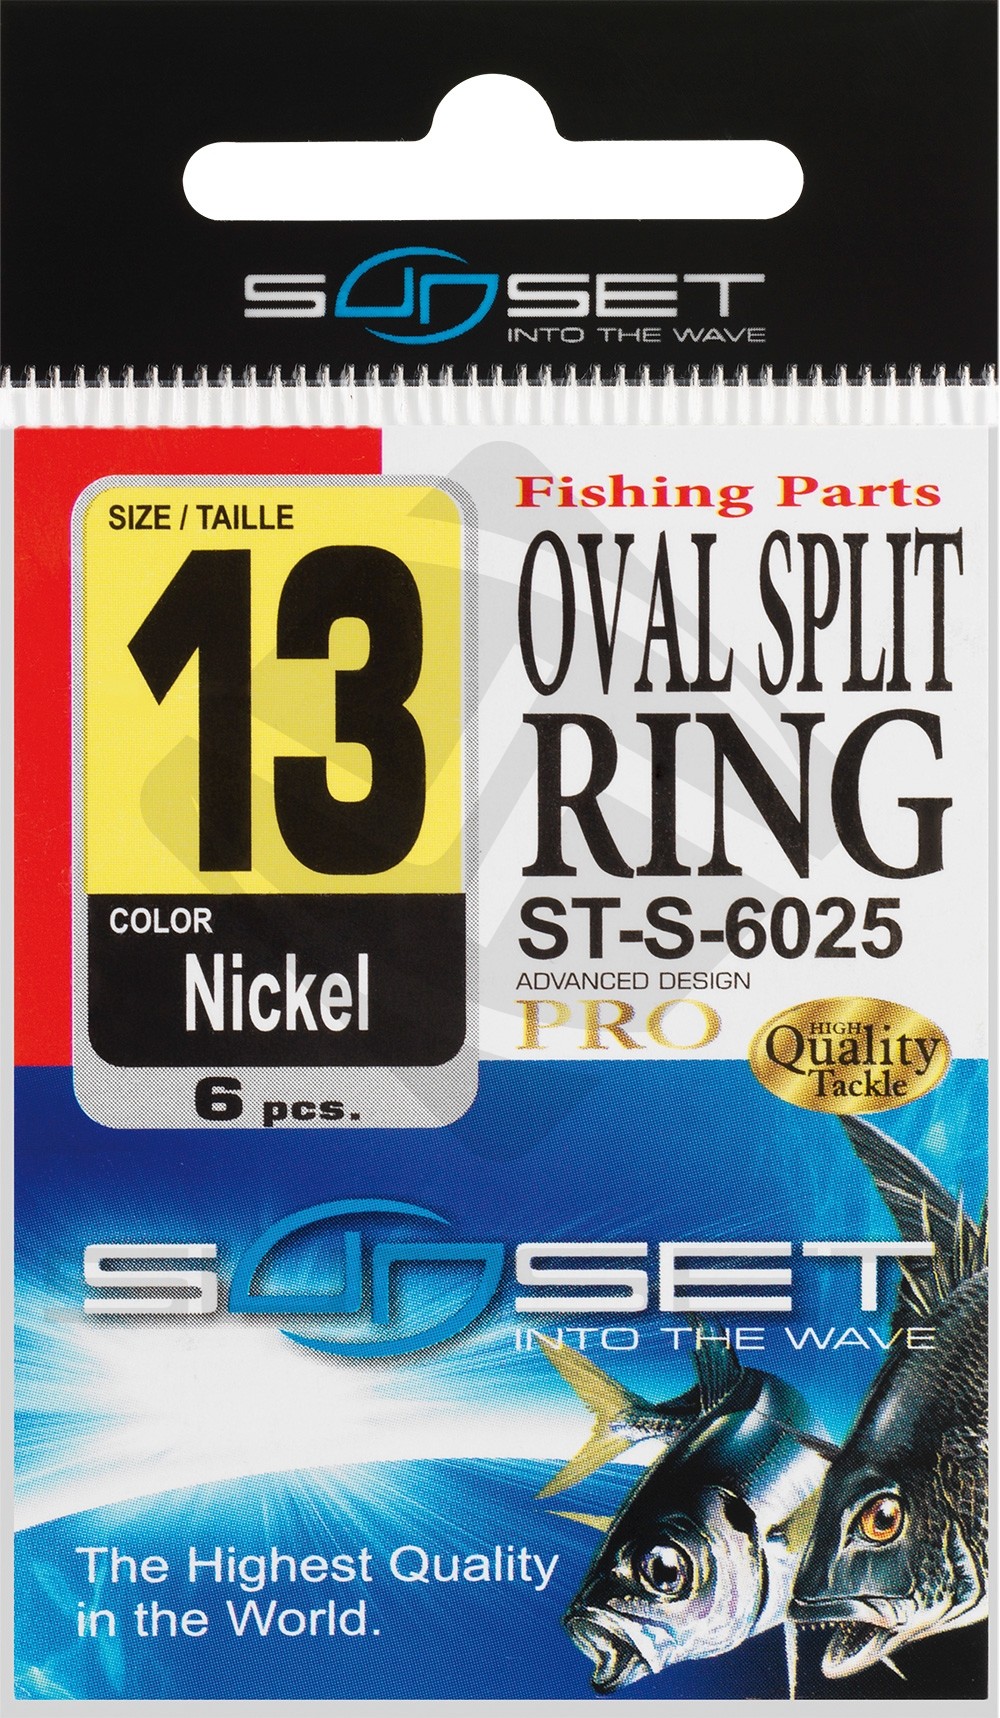 OVAL SPLIT RING ST-S-6025 - Sunset Fishing